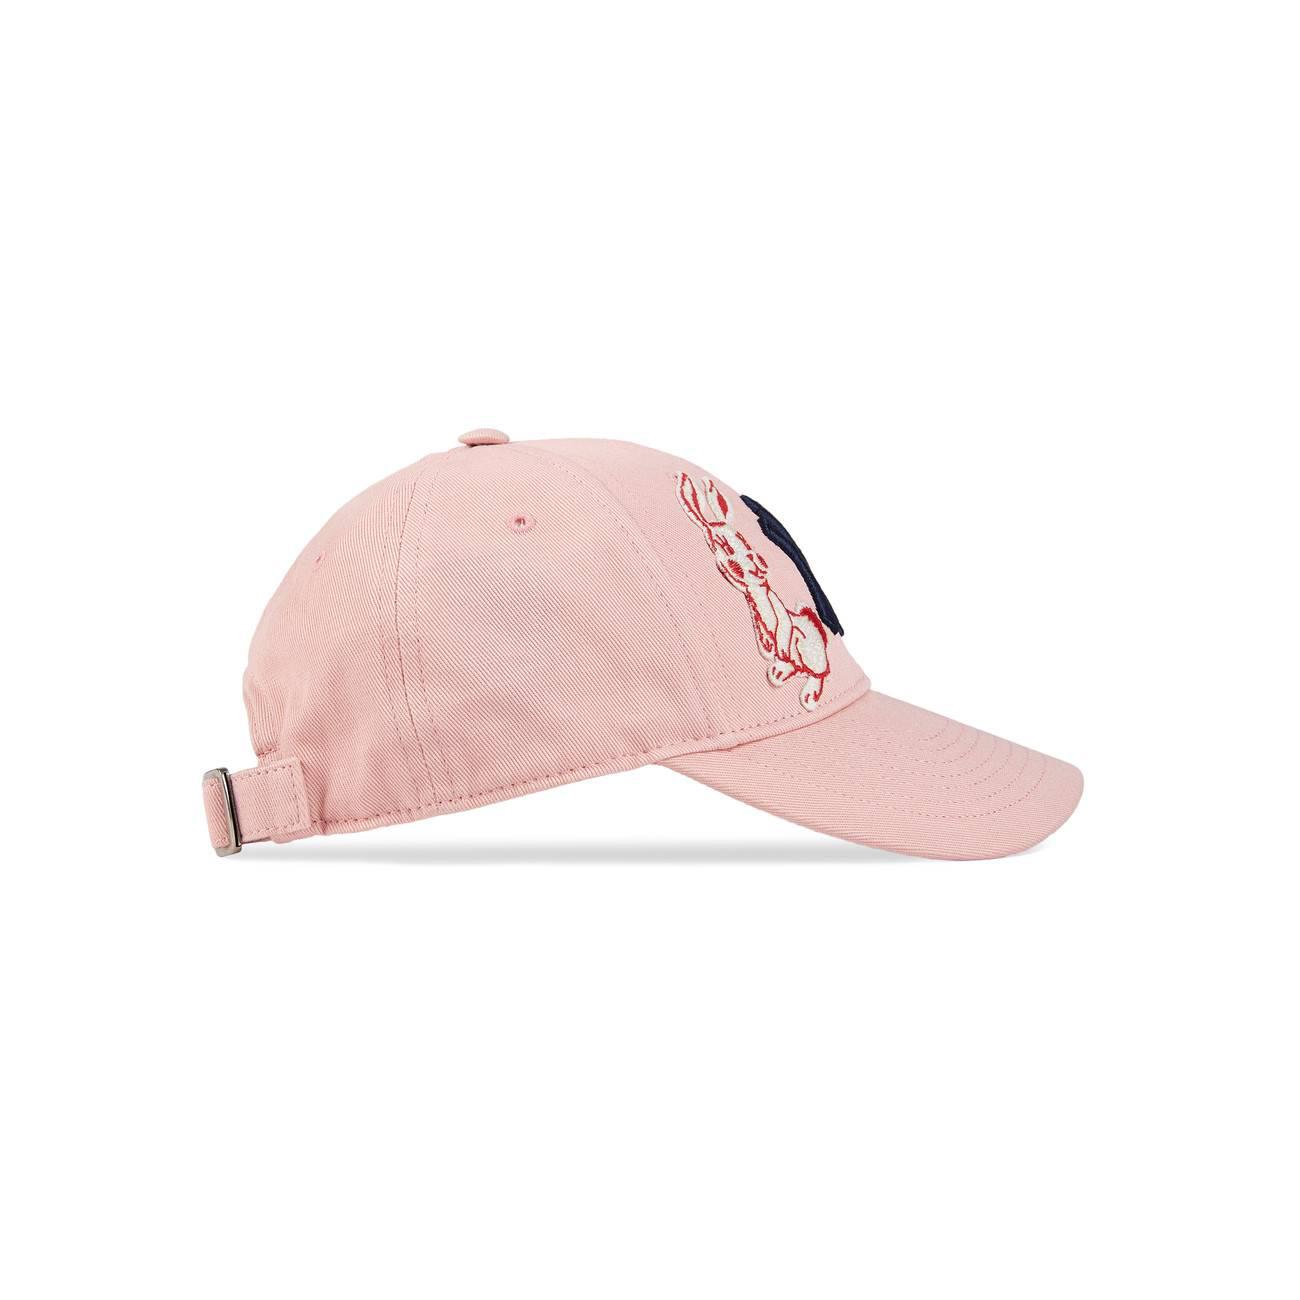 Gucci NY Gucci Adjustable Cap - Pink Hats, Accessories - GUC1306148